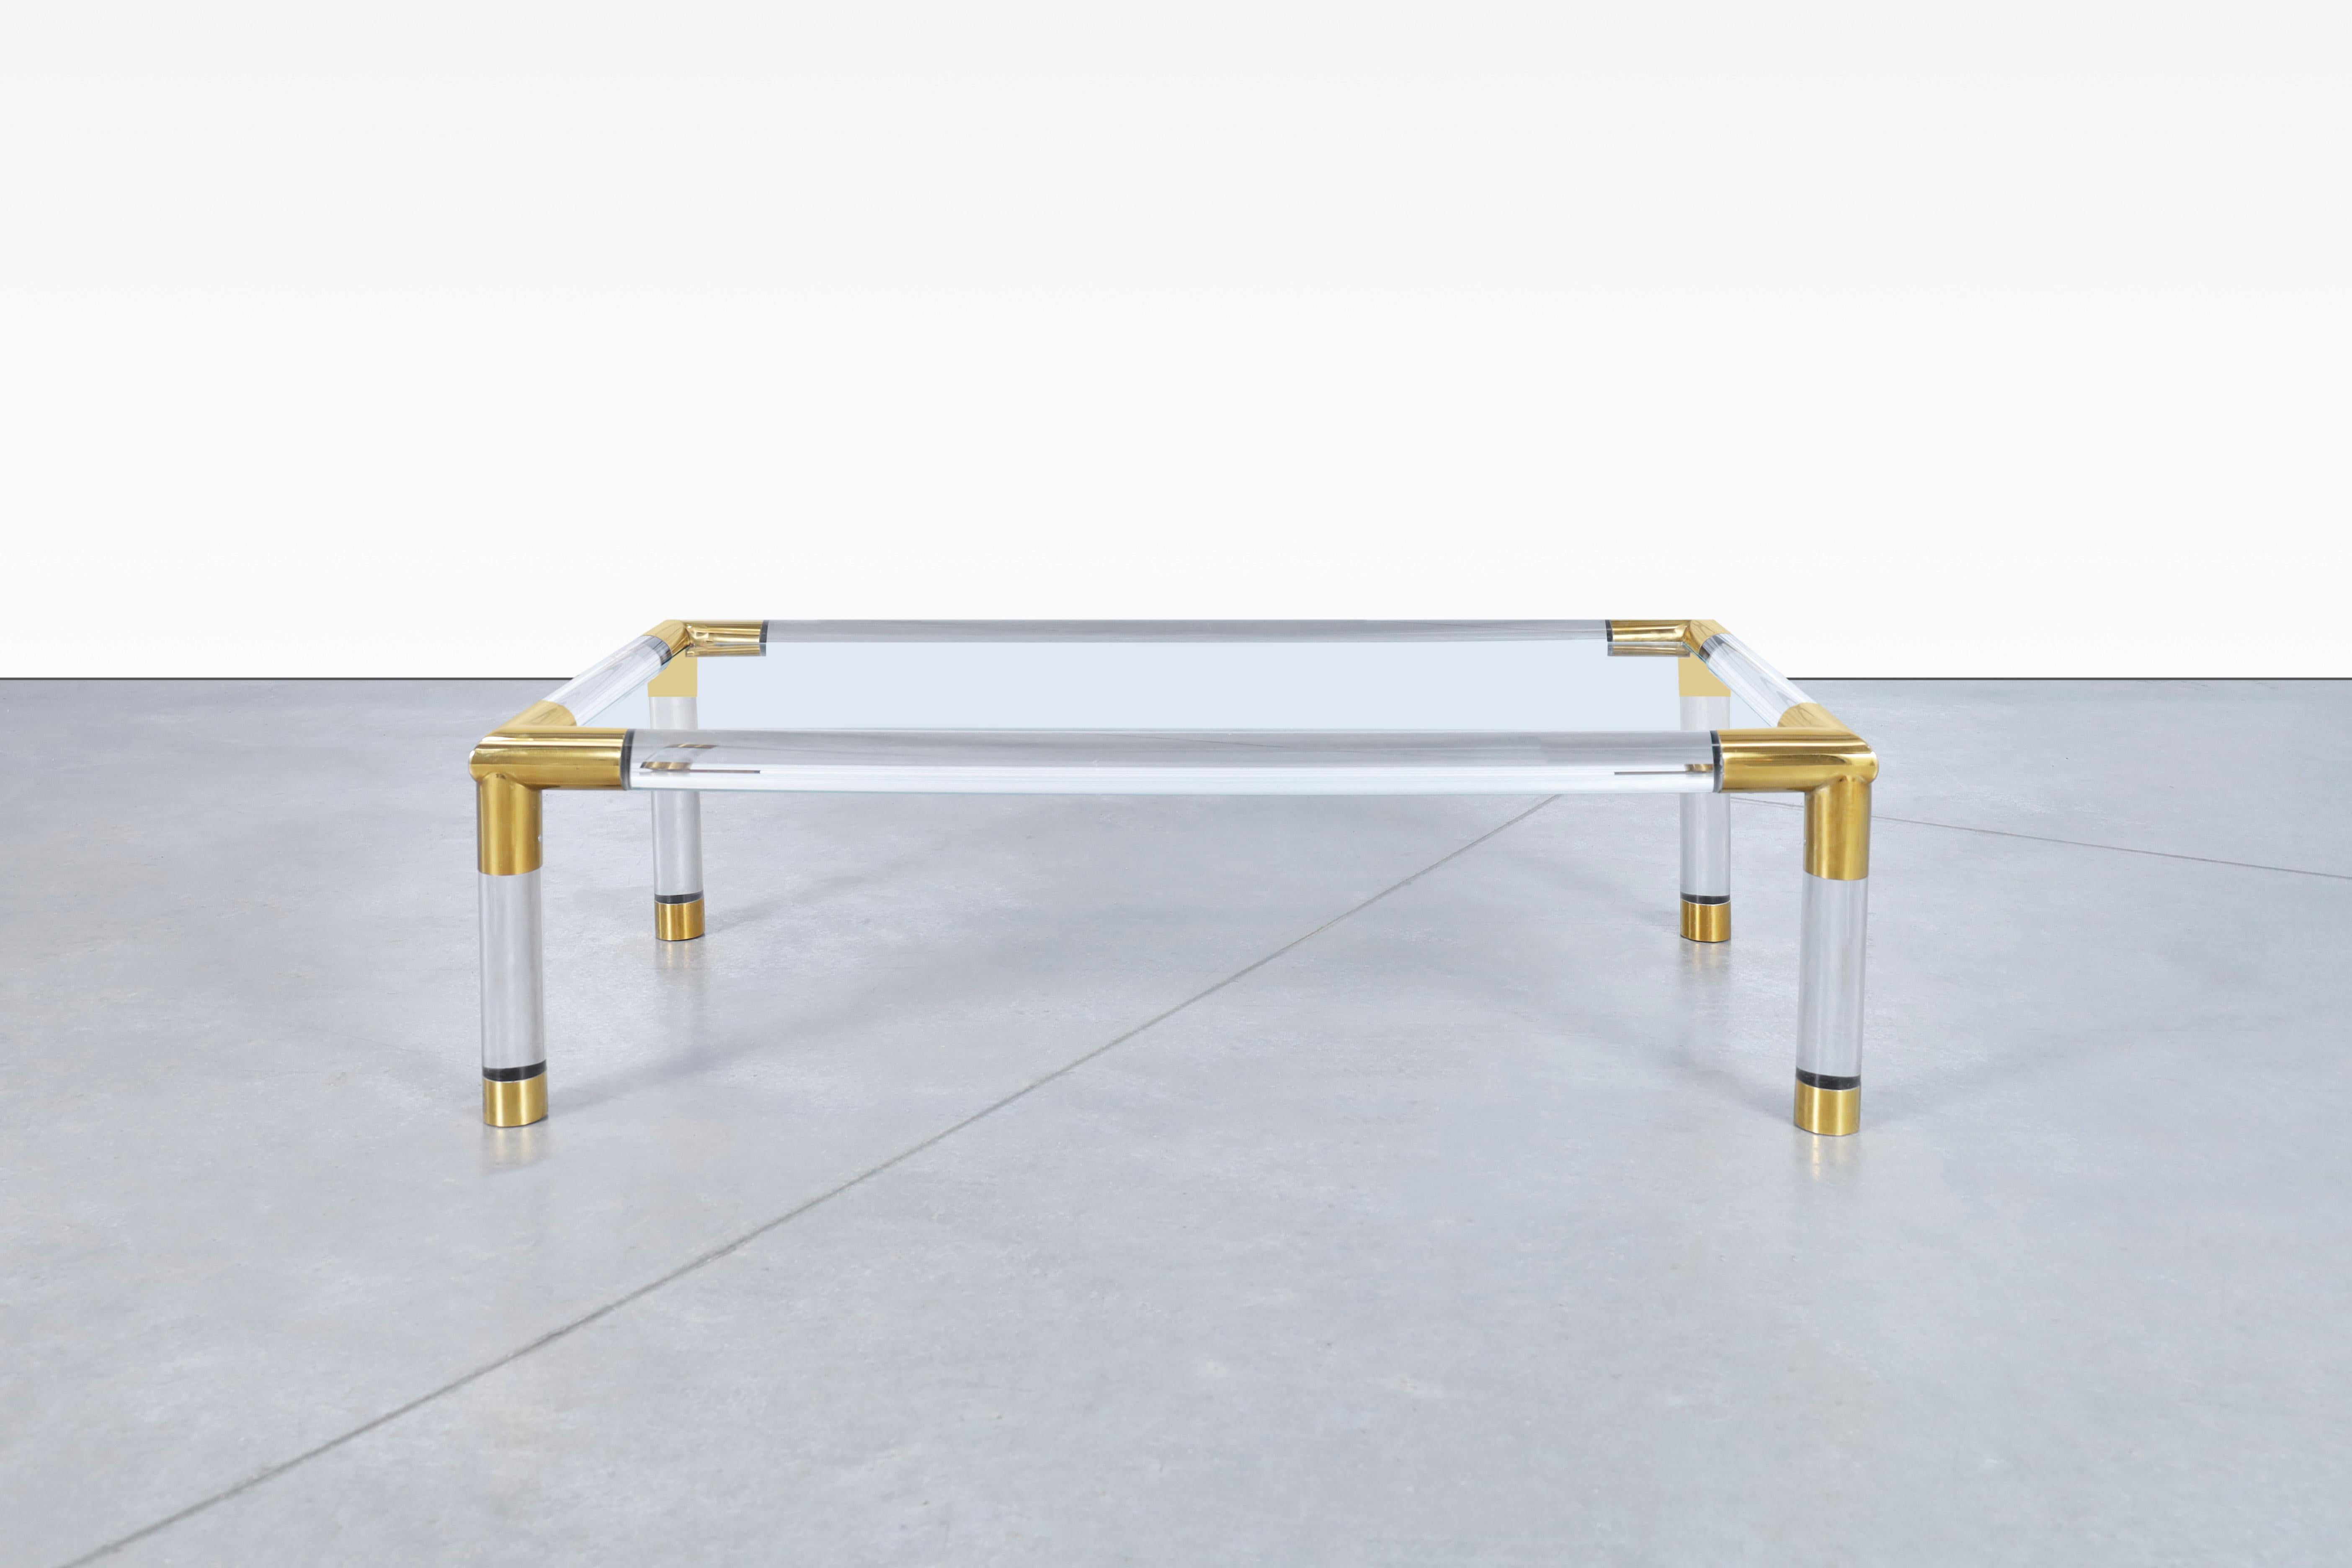 Exceptionnelle table basse moderniste italienne en laiton et lucite, conçue et fabriquée en Italie, vers les années 1970. Cette table exquise est un véritable chef-d'œuvre de l'artisanat italien. Elle présente une structure solide composée de tubes